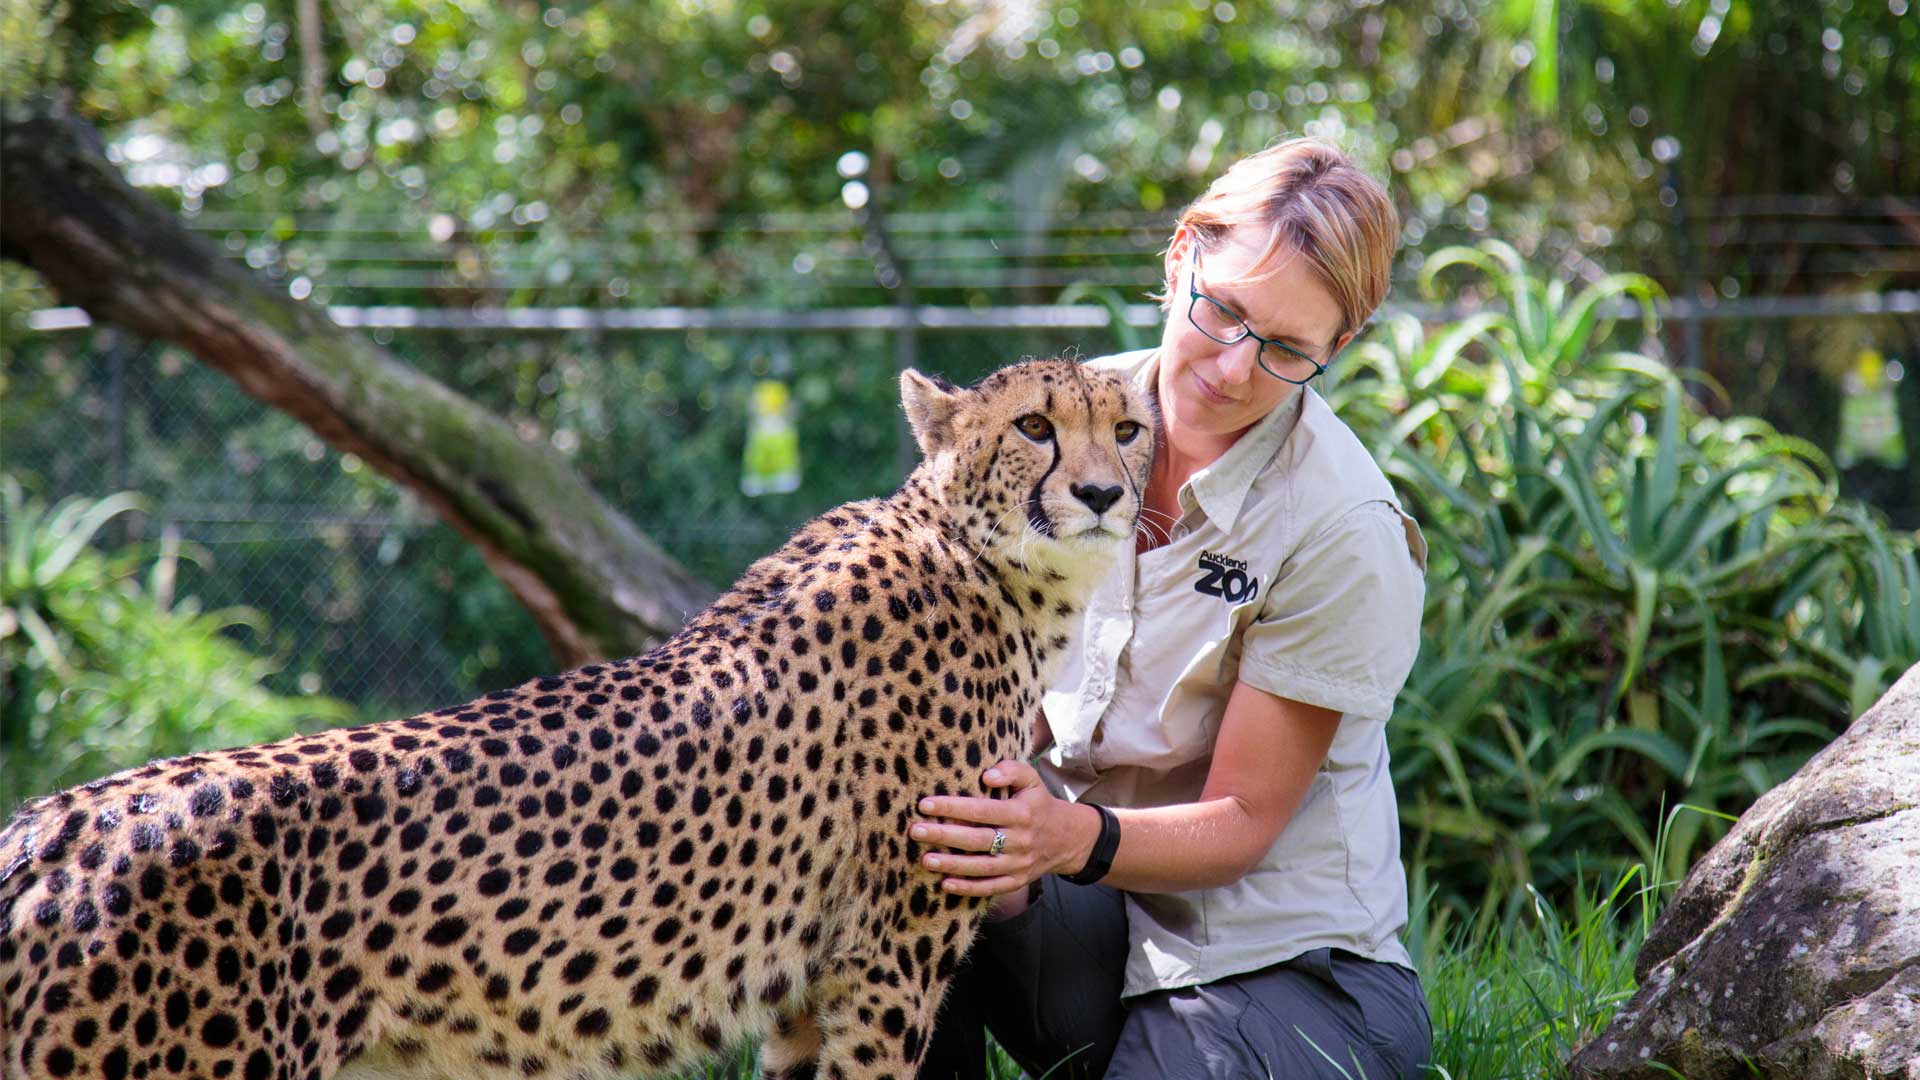 https://cdn.aucklandunlimited.com/zoo/assets/media/cheetah-girls-update-gallery-5.jpg